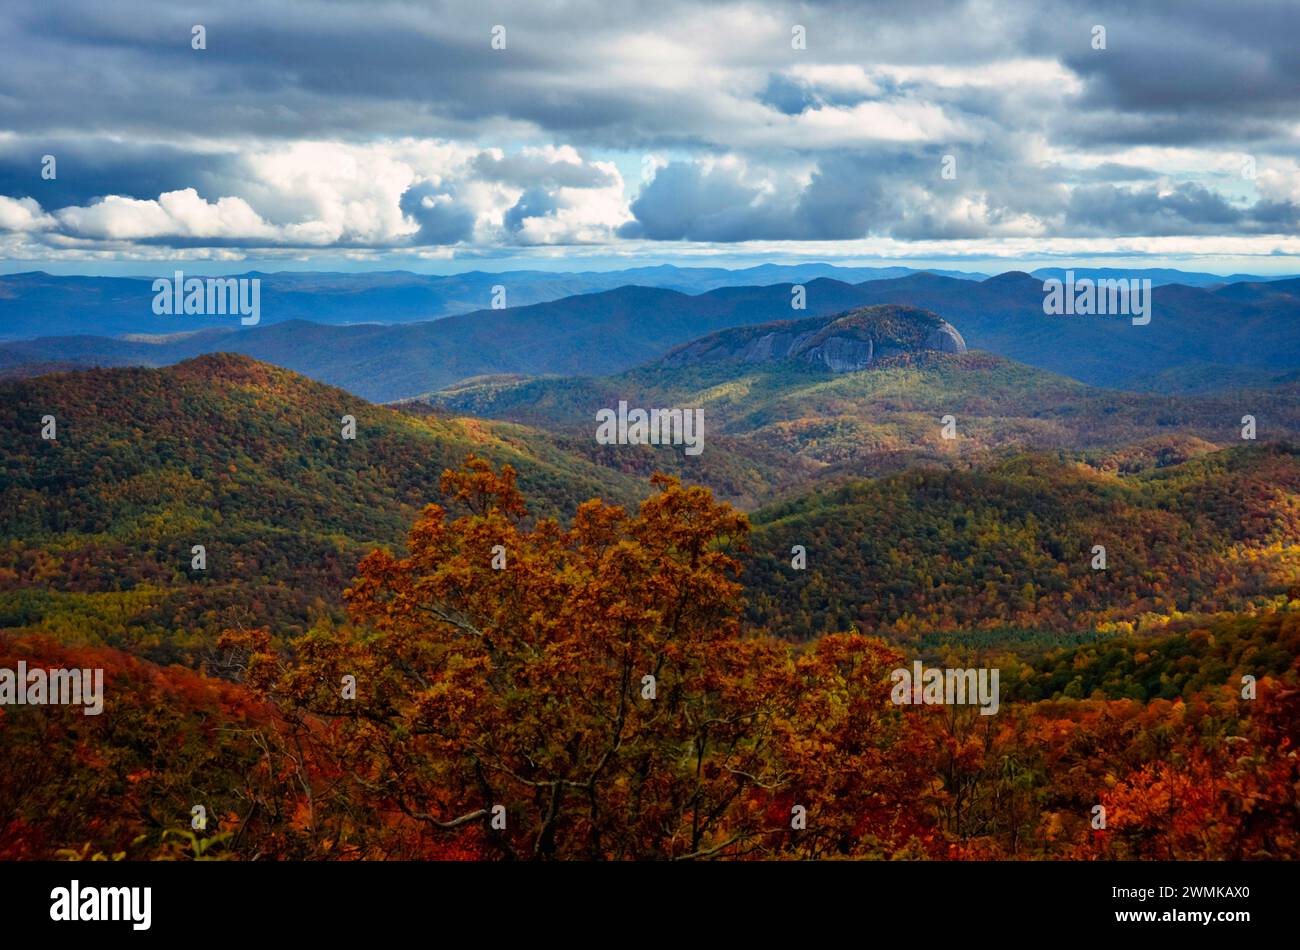 Blick auf den Looking Glass Rock vom Blue Ridge Parkway in der Nähe von Asheville, North Carolina, USA; North Carolina, Vereinigte Staaten von Amerika Stockfoto